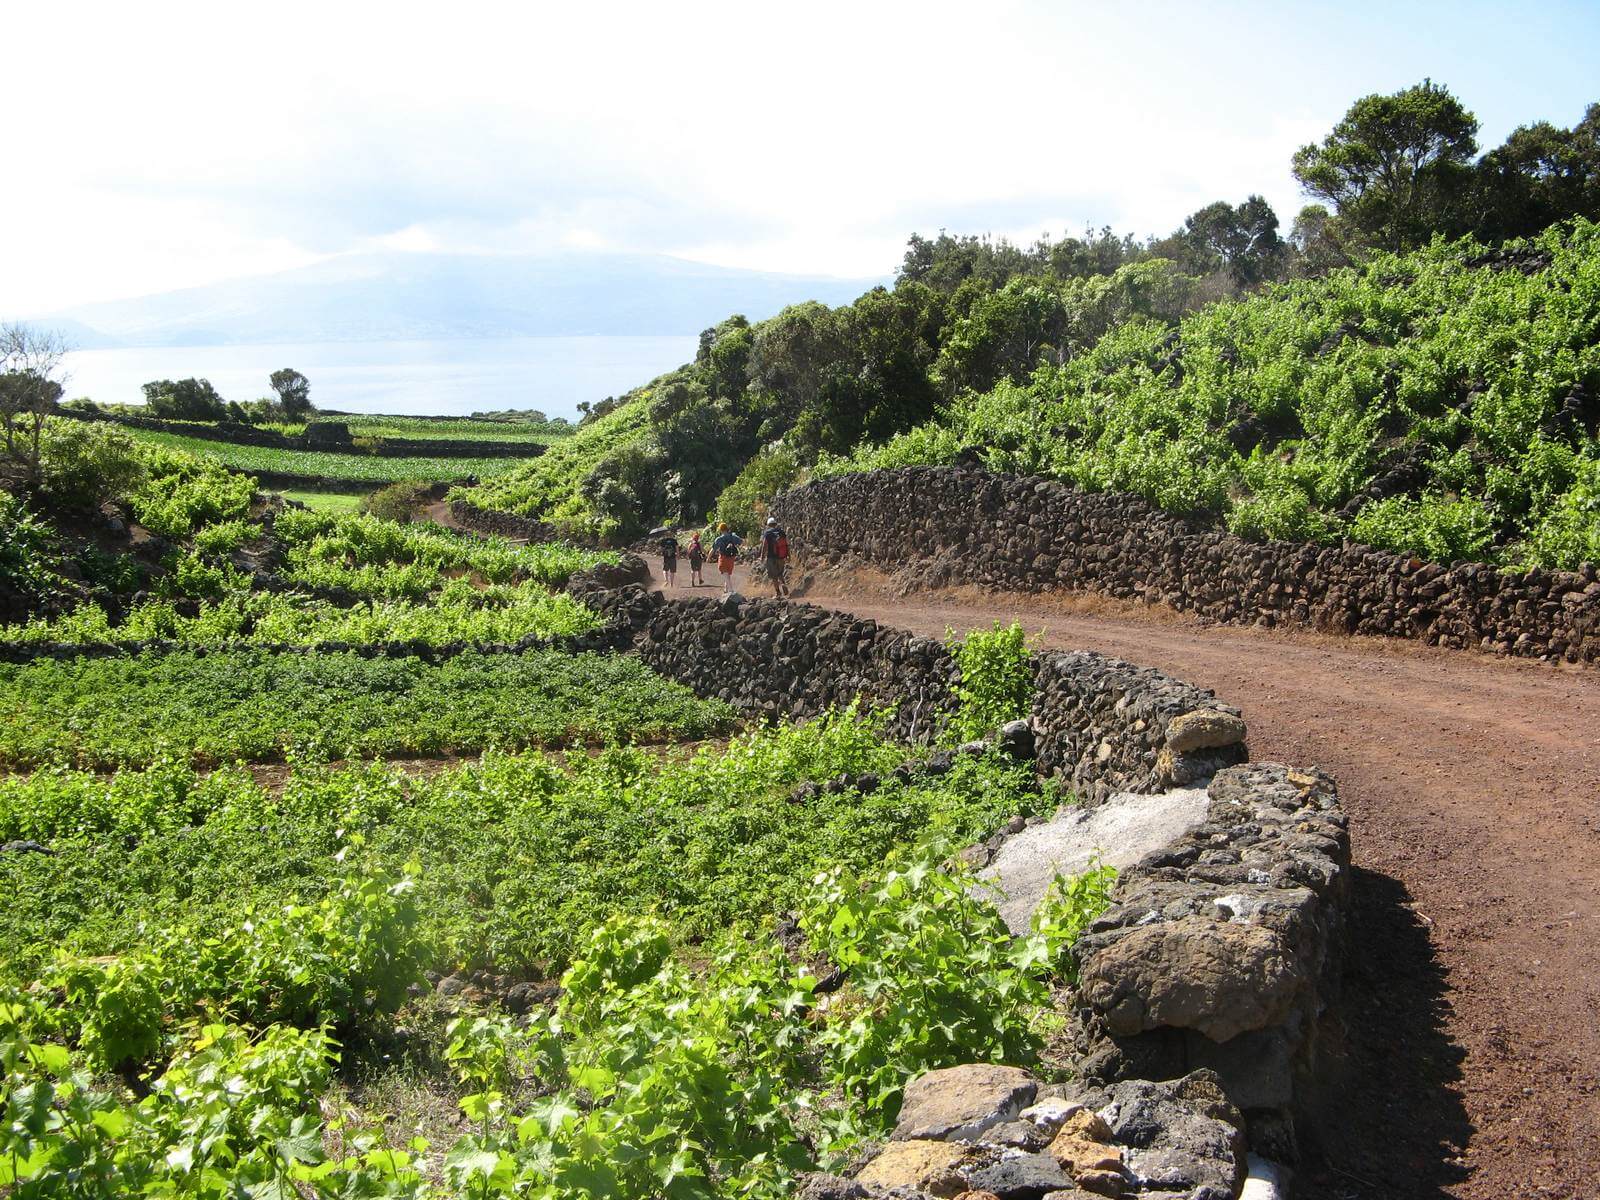 Foto: Wanderweg durch das weitlufige Weinbaugebiet auf Pico - Lupe Reisen